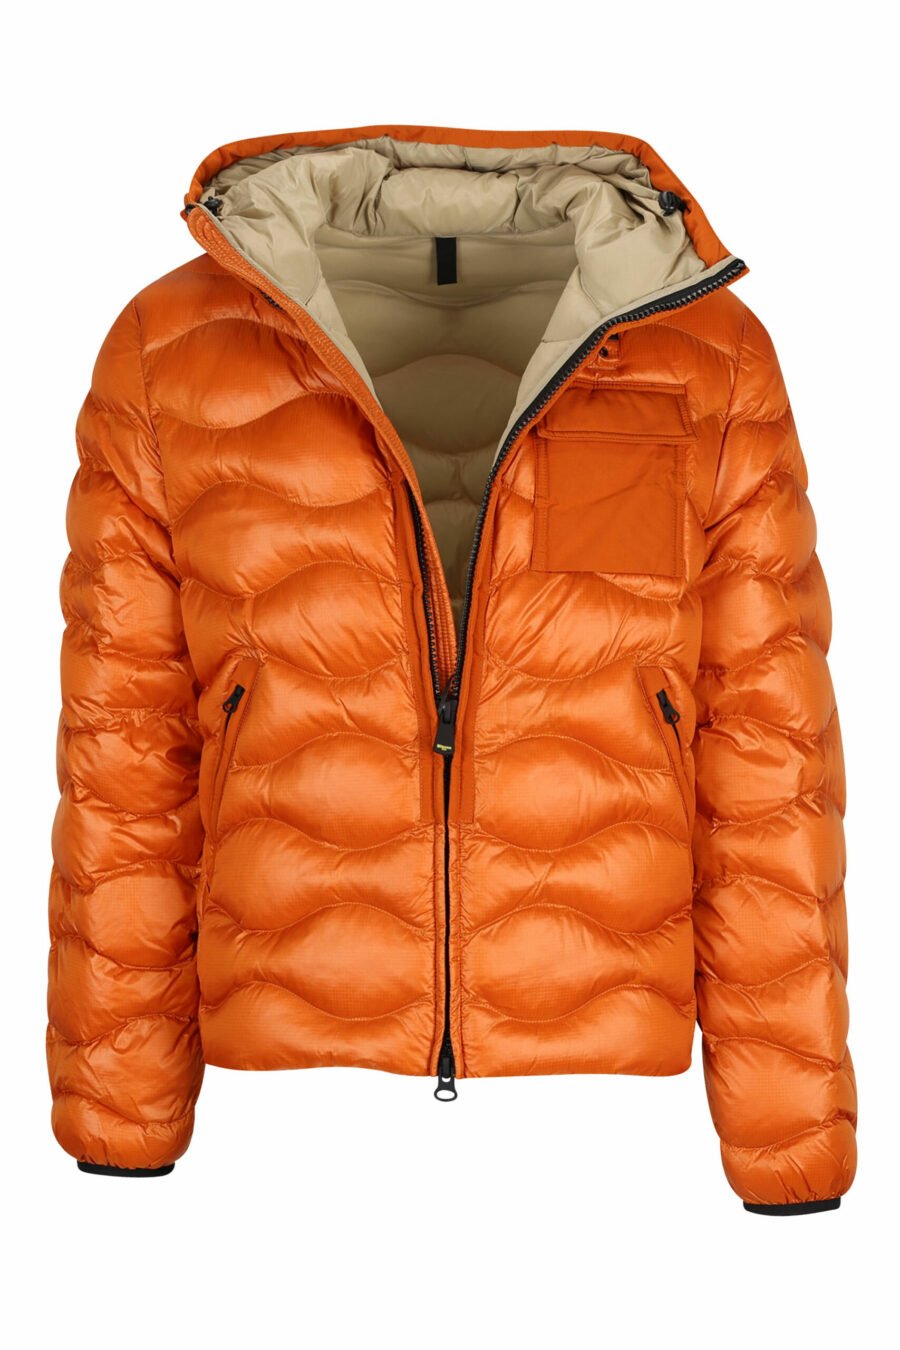 Veste à capuche orange avec lignes ondulées et doublure beige - 8058610697631 3 à l'échelle